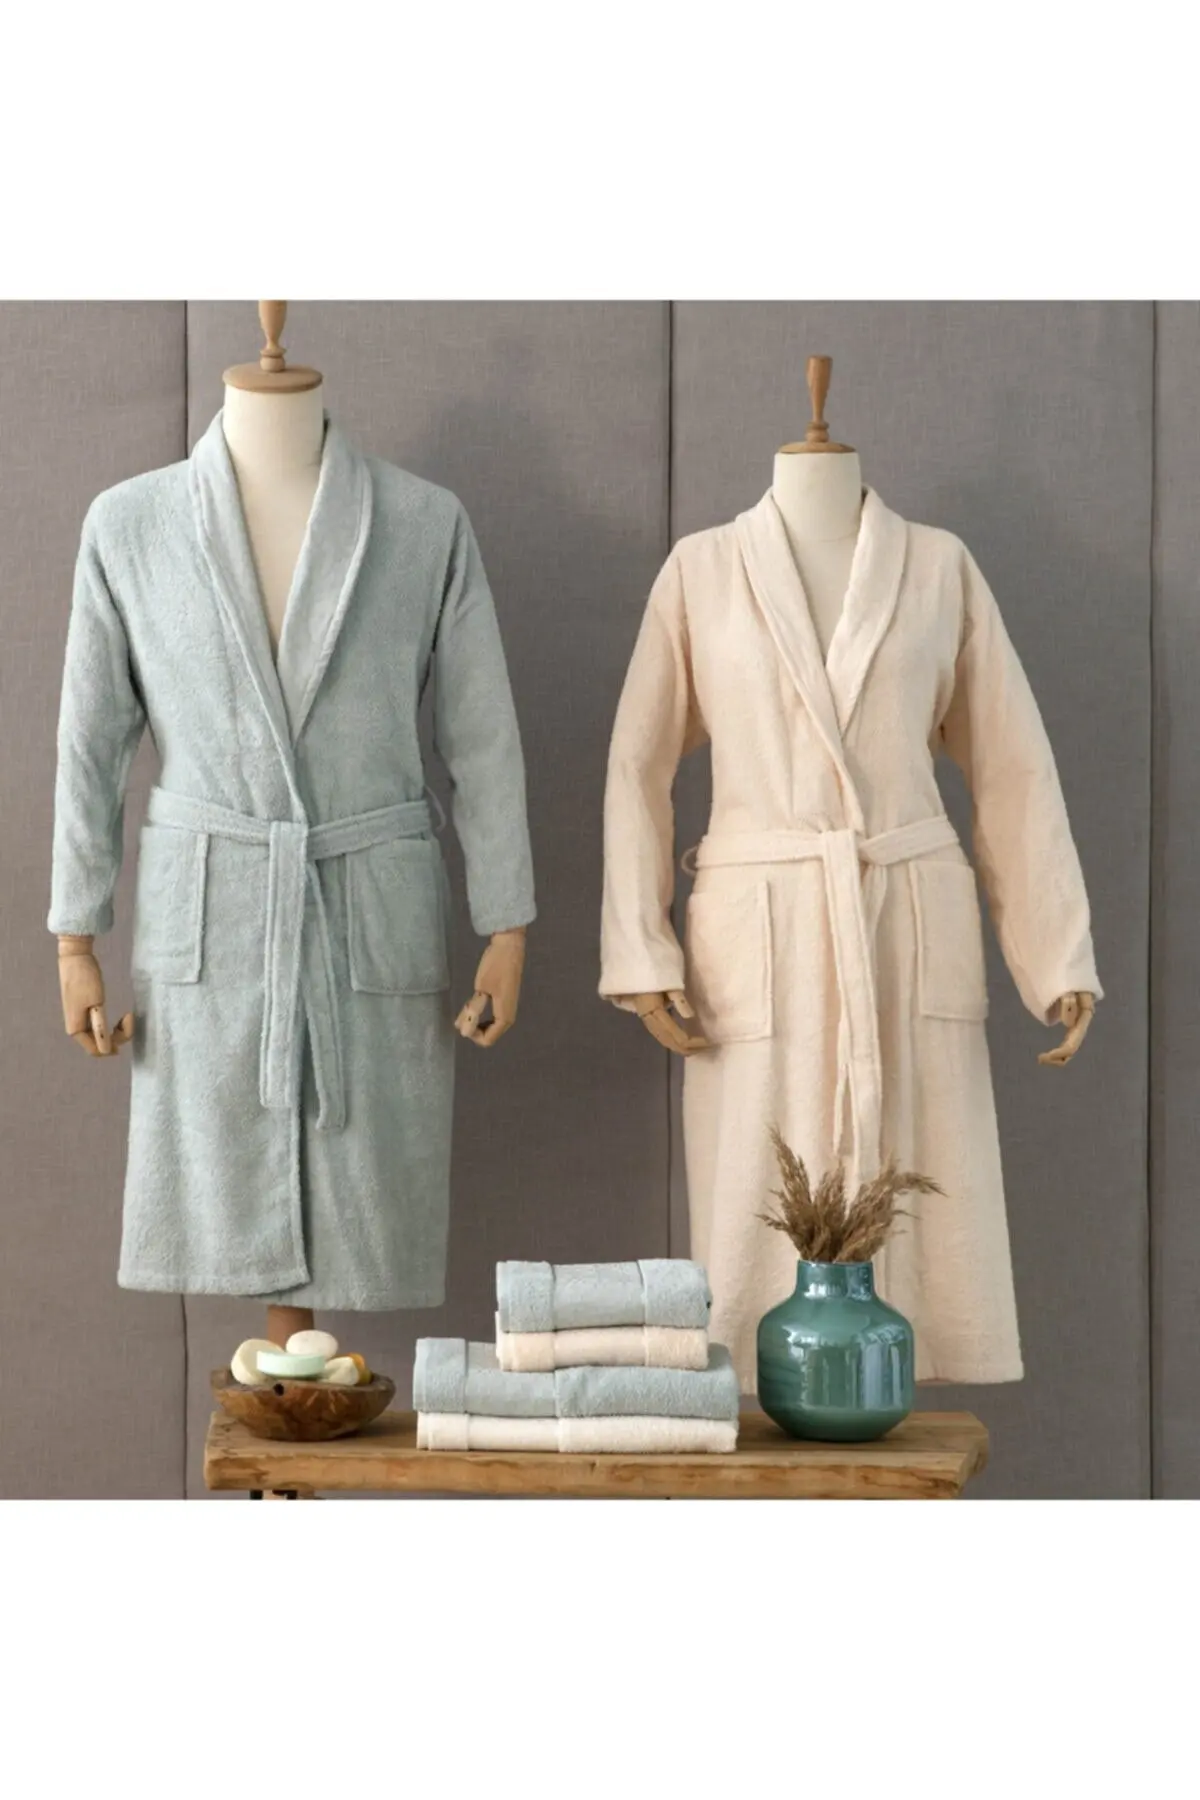 6 Pcs Lux Quality Soft Cotton Bathrobe Sets Mint Beige For Couple 2 Pcs Bathrobe 2 Pcs Face Towel 2 Pcs Head Towel Home Textile